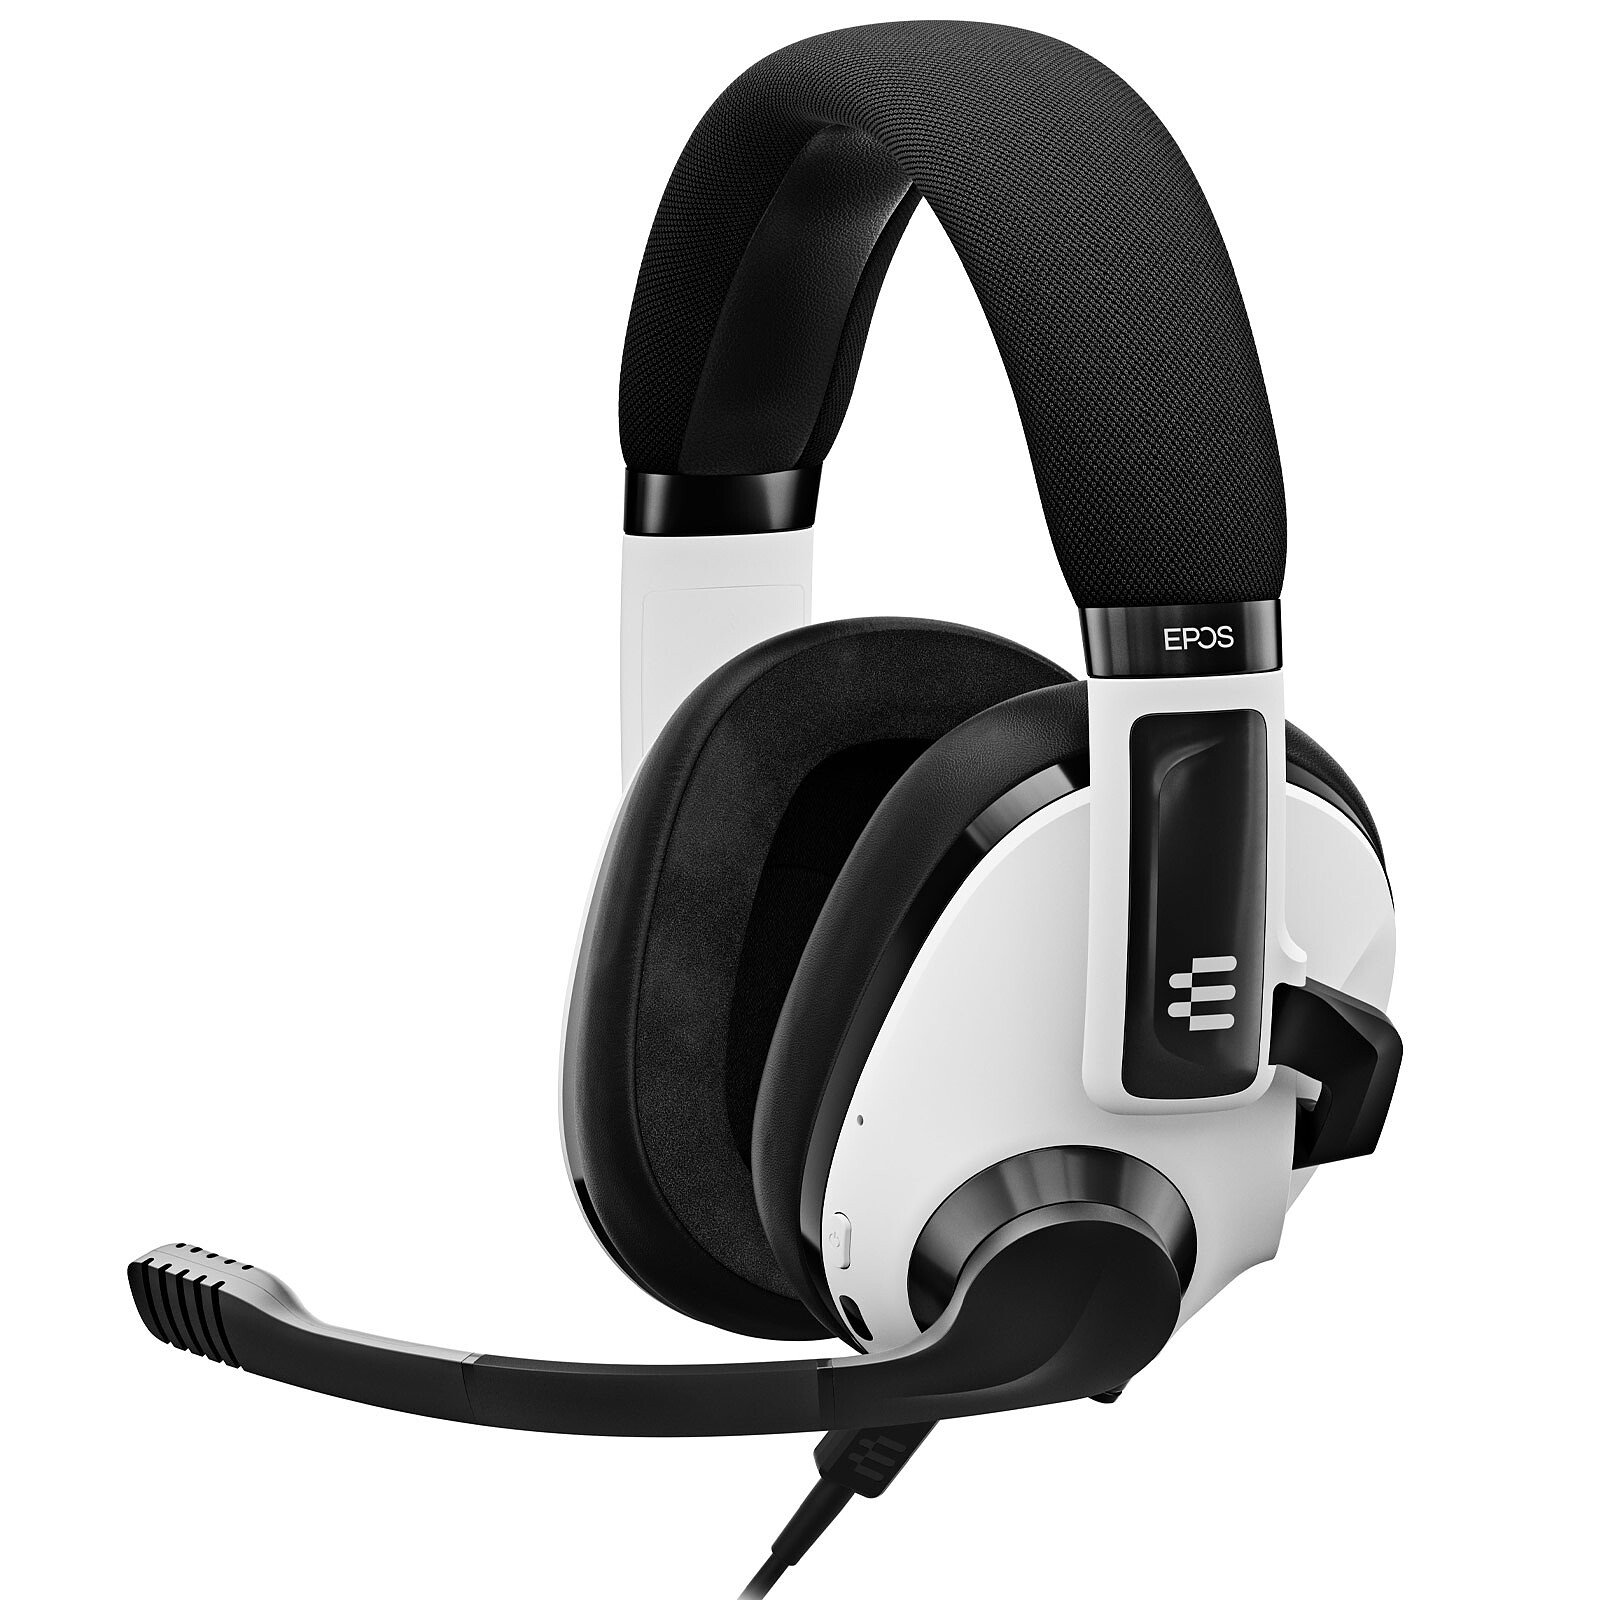 Sony INZONE H3 Auriculares Diadema Juego Negro, Blanco - Sony